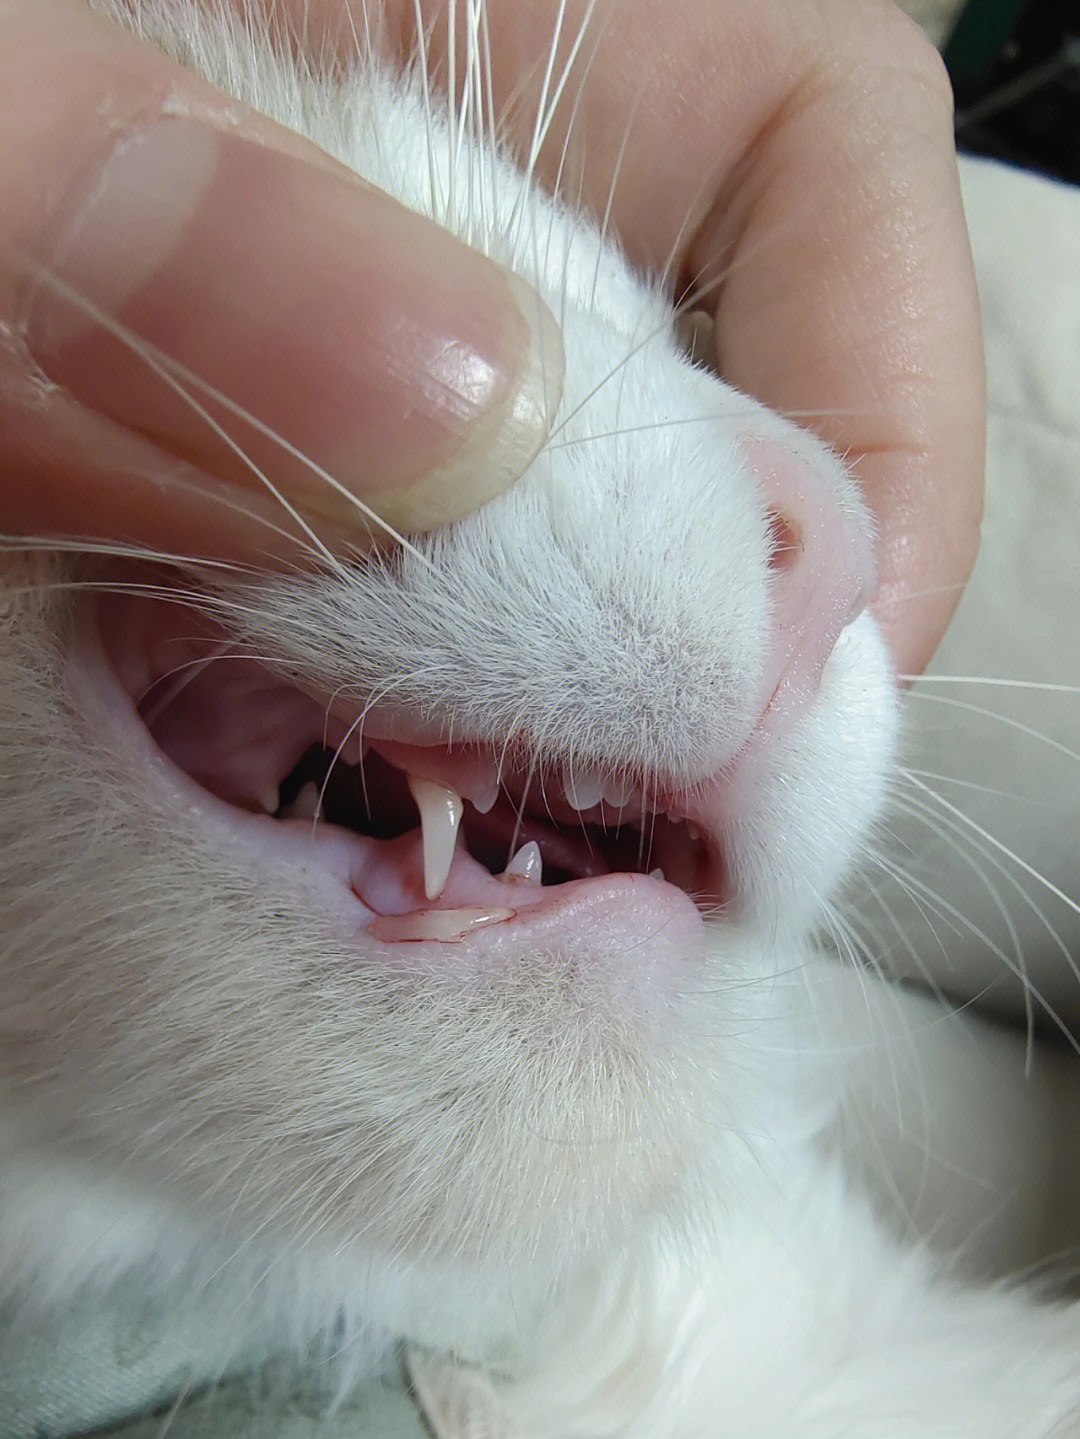 猫牙齿划伤的伤口图片图片